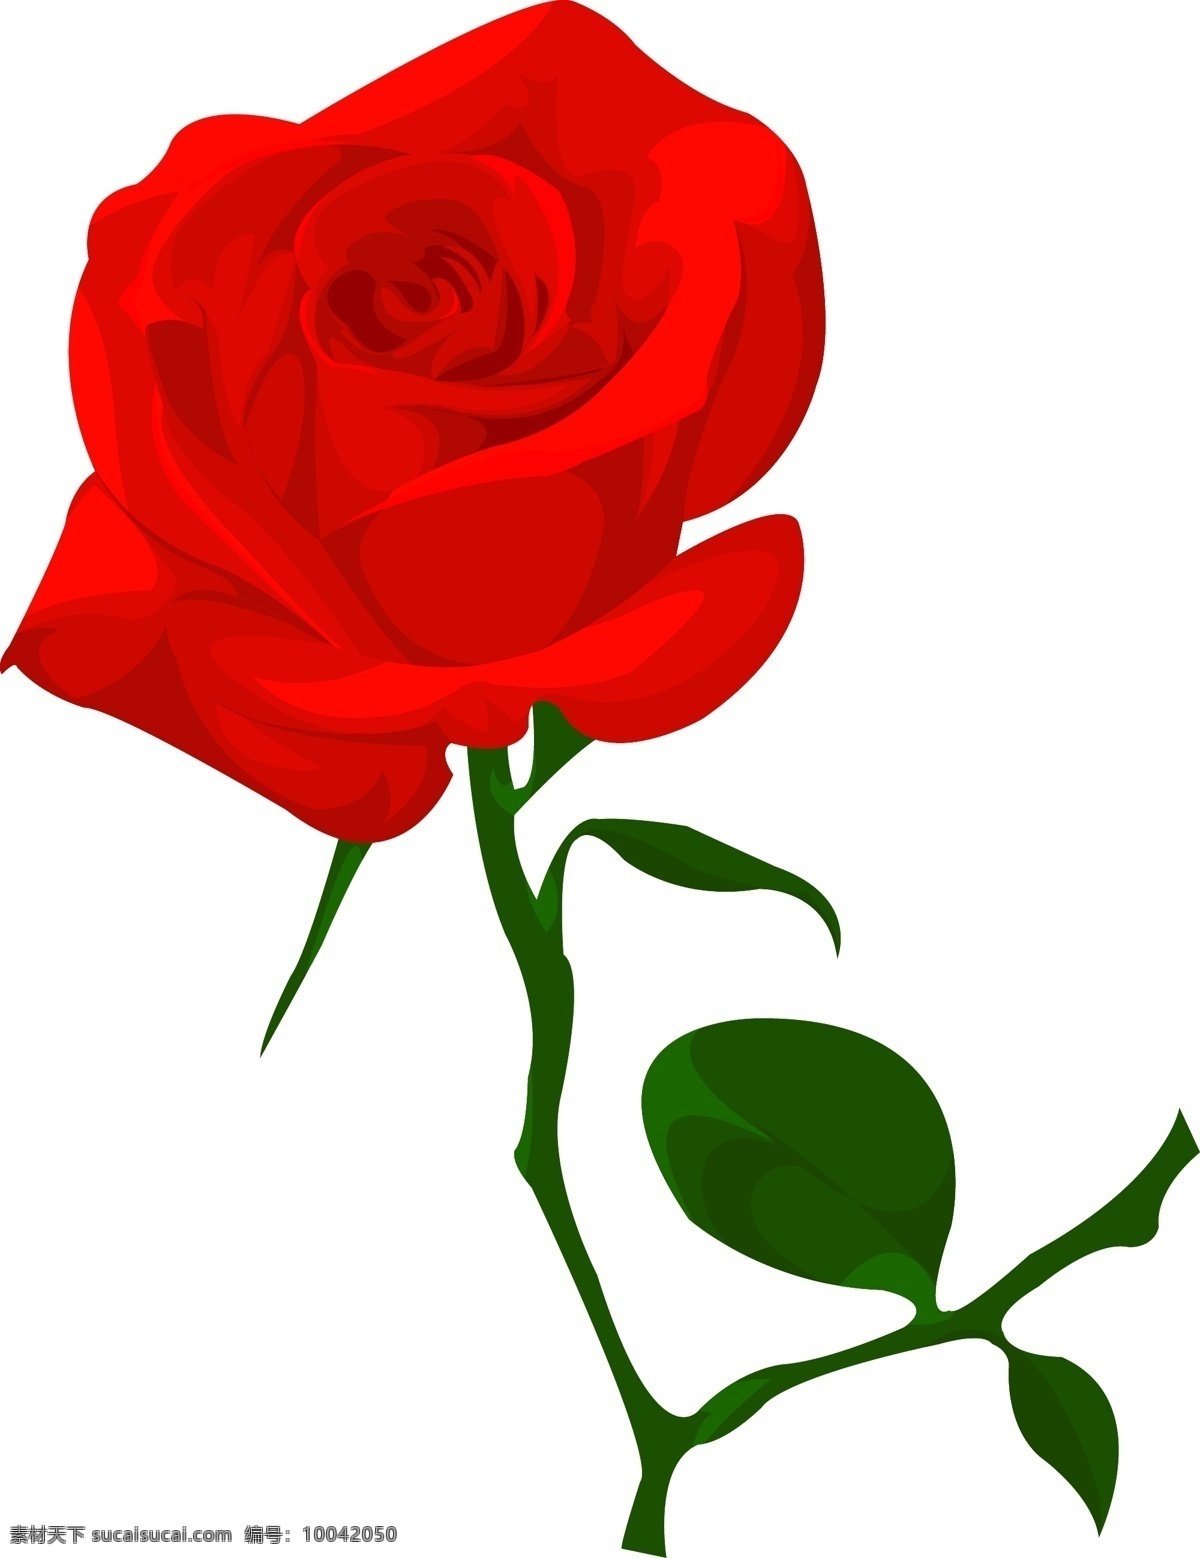 支 玫瑰花 红玫瑰 花 节日素材 情人节 情人节玫瑰 一朵玫瑰 矢量 模板下载 一支玫瑰花 情人节七夕